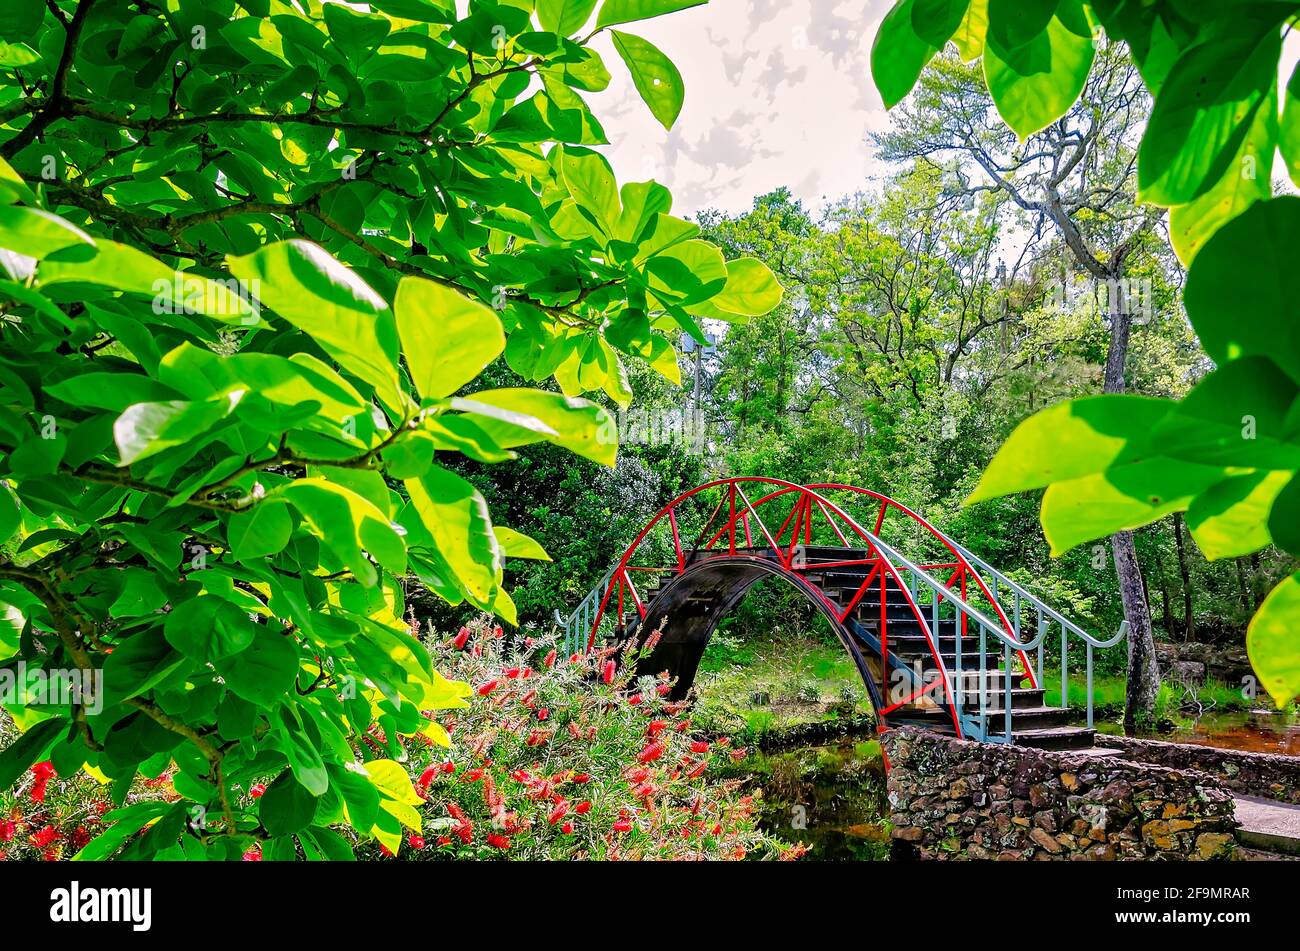 Le pont de lune, ou pont oriental, est photographié dans le jardin américano-asiatique des jardins de Bellingrath, le 19 avril 2021, à Theodore, Alabama. Banque D'Images